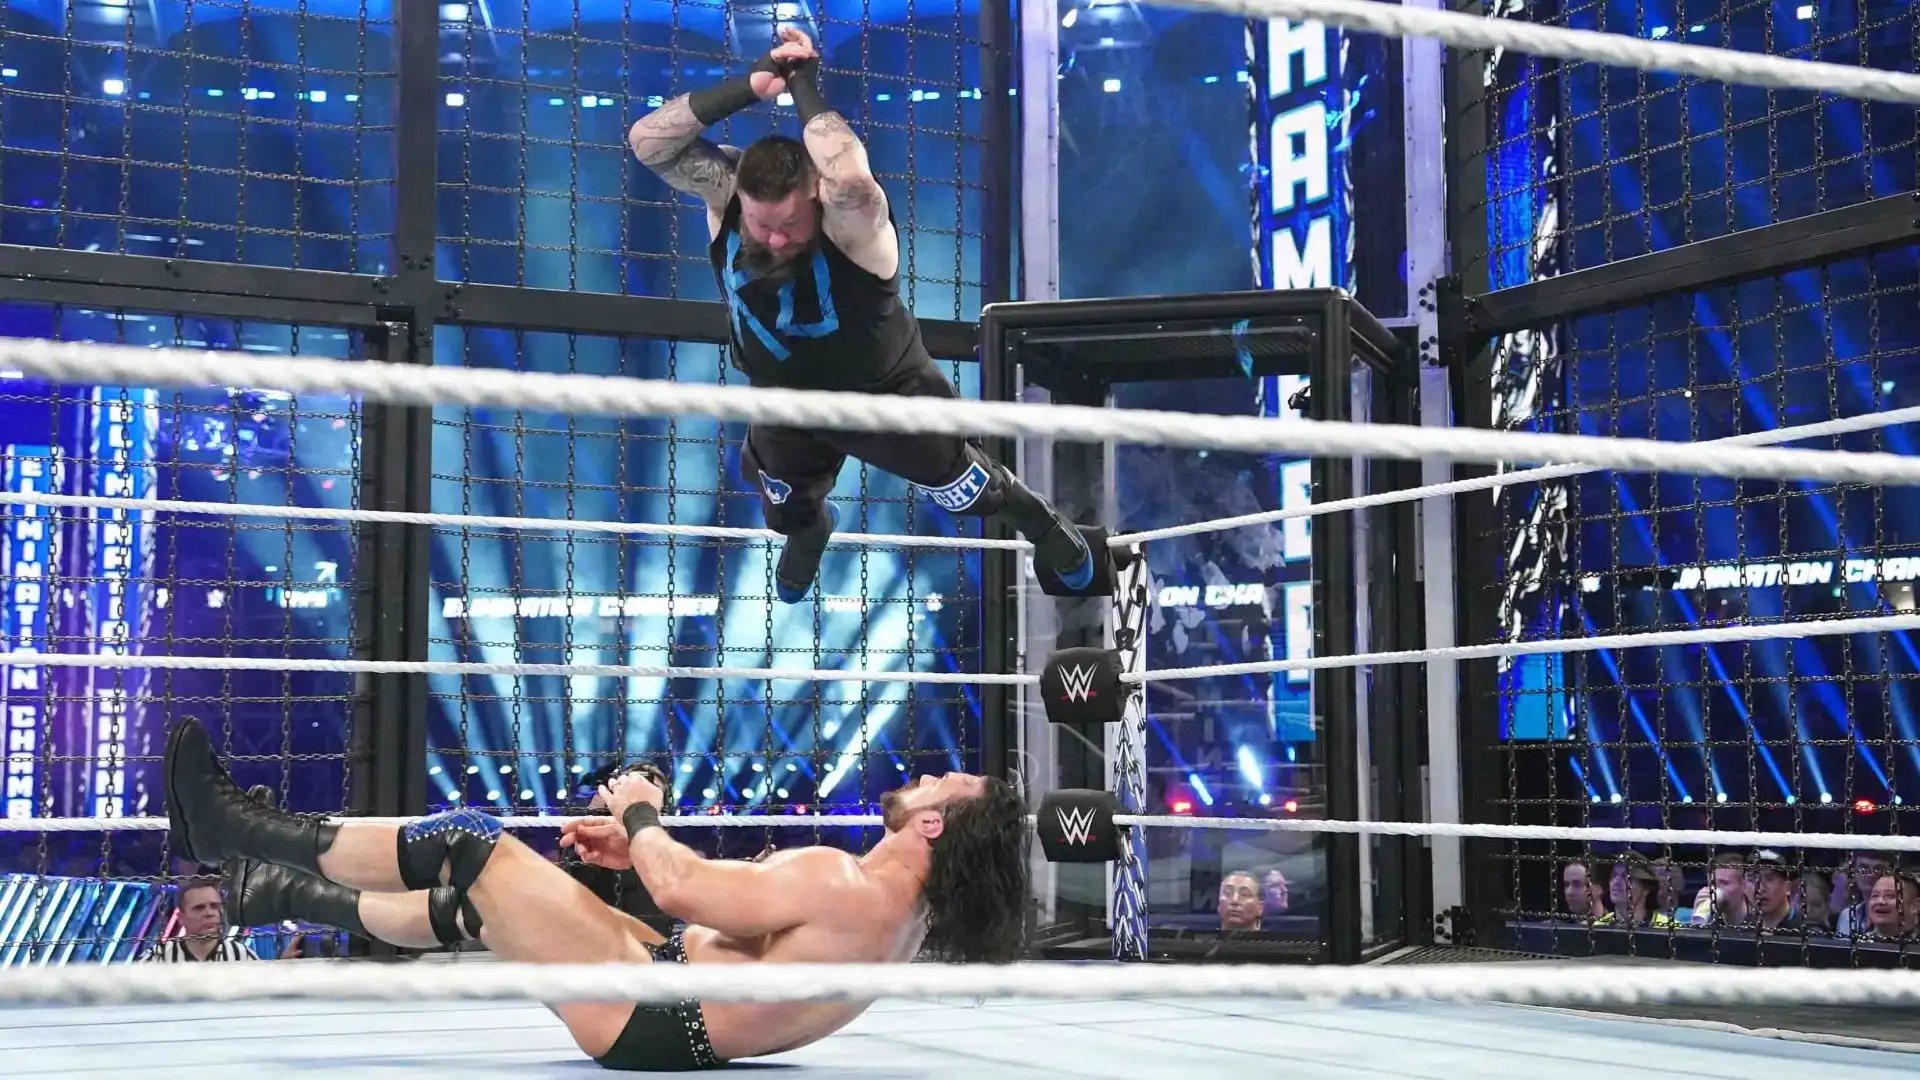 Questo è uno dei match più violenti della disciplina e viene utilizzato solamente in WWE.